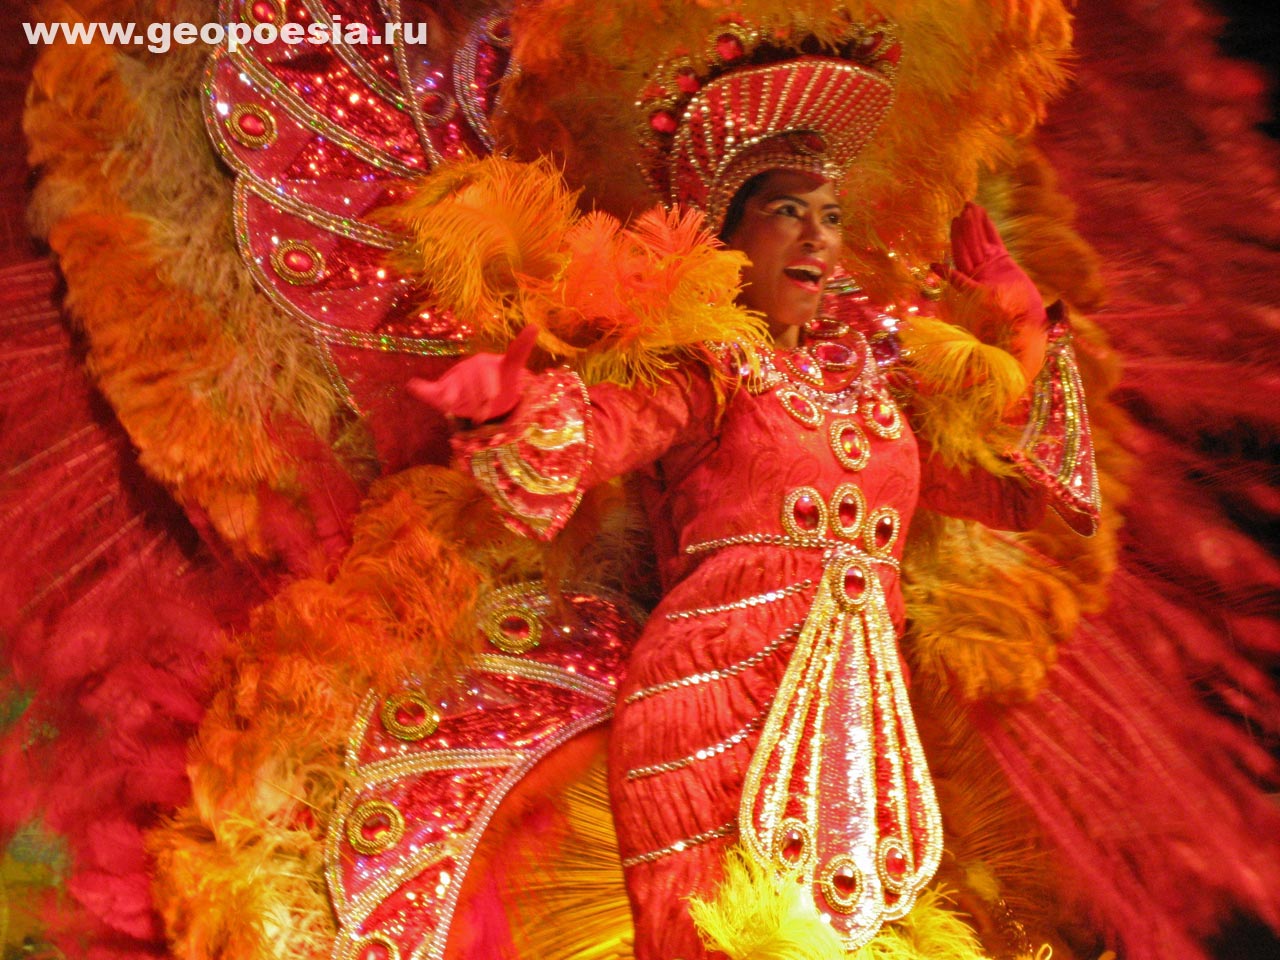 фото бразильского карнавала